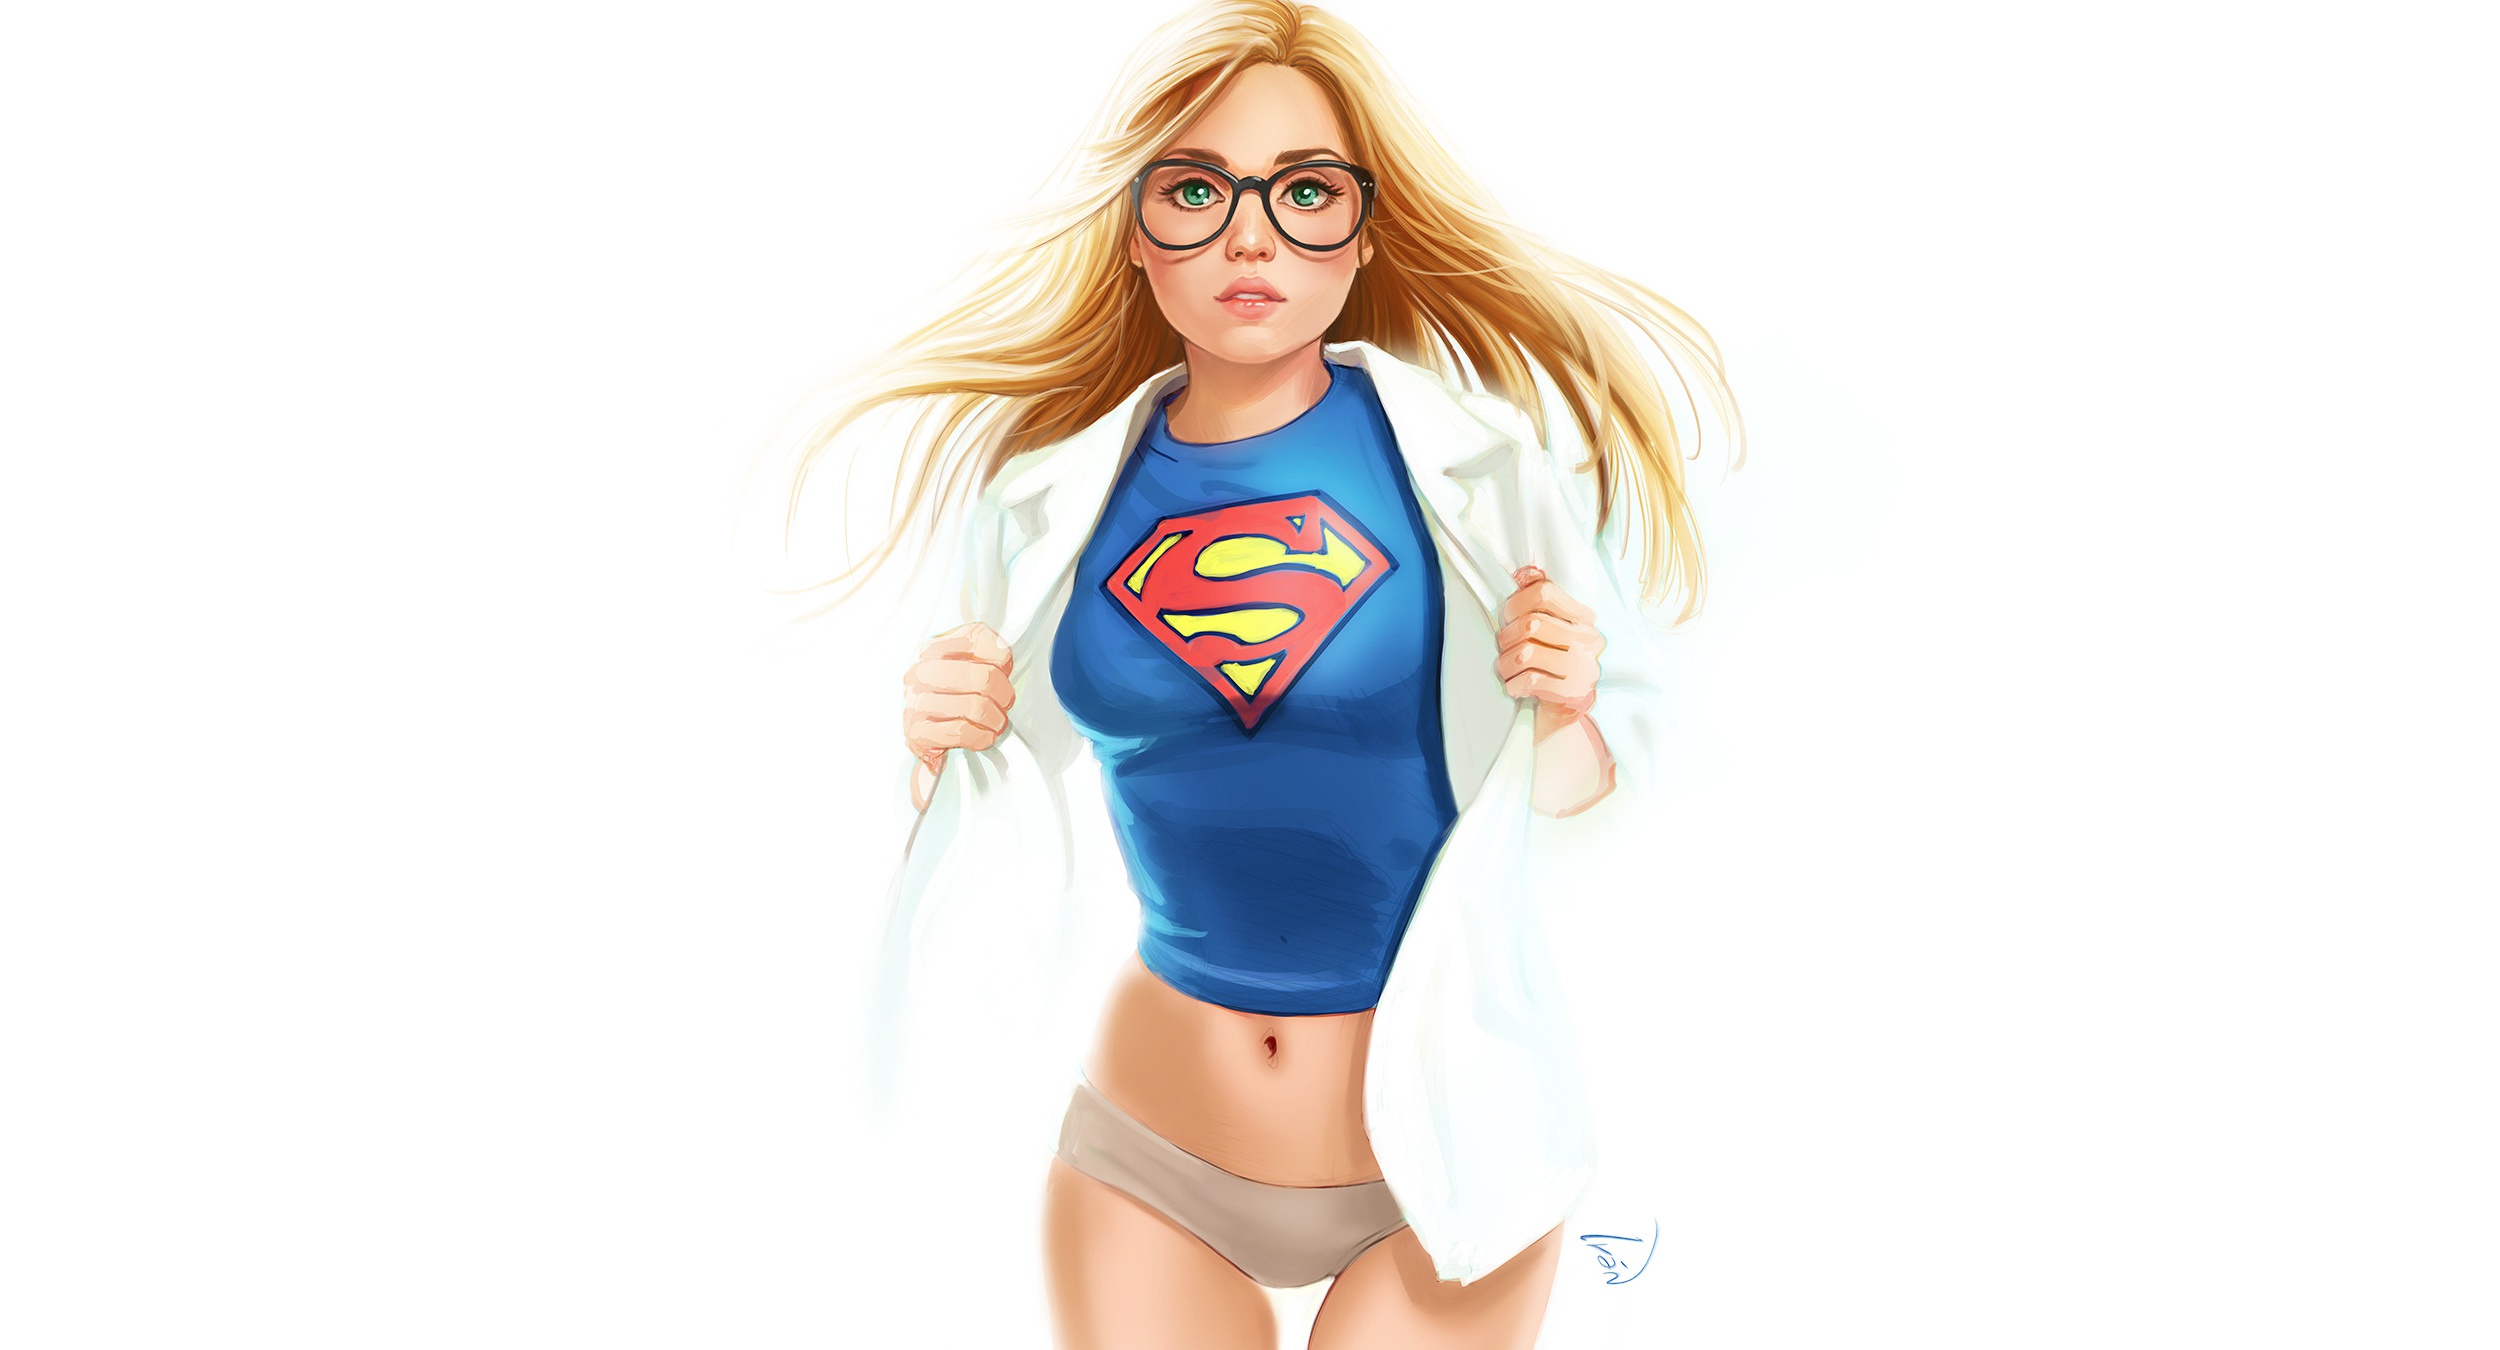 General 2500x1350 Supergirl glasses simple background blonde panties